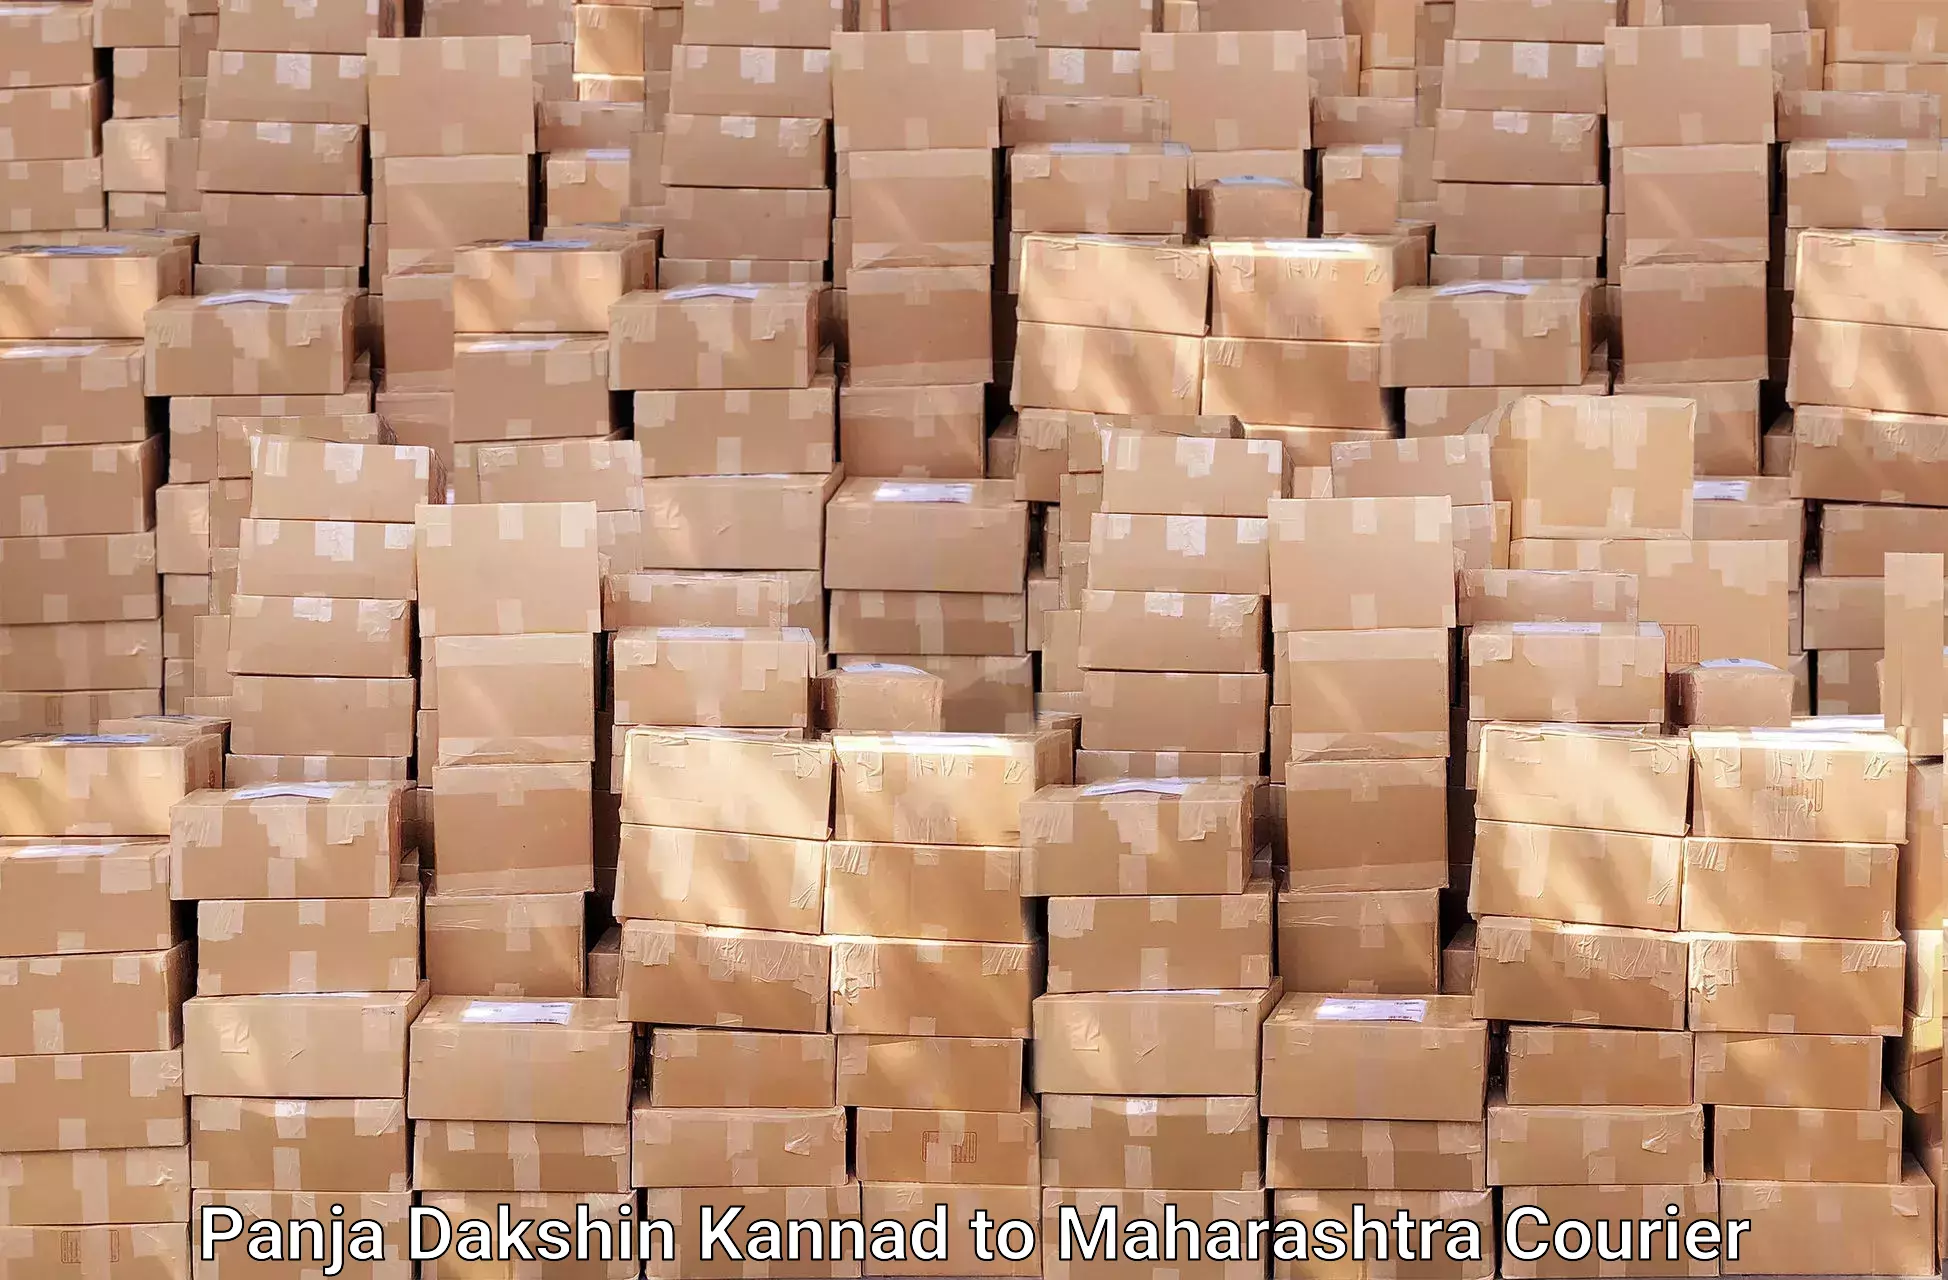 Efficient packing and moving Panja Dakshin Kannad to Wadki